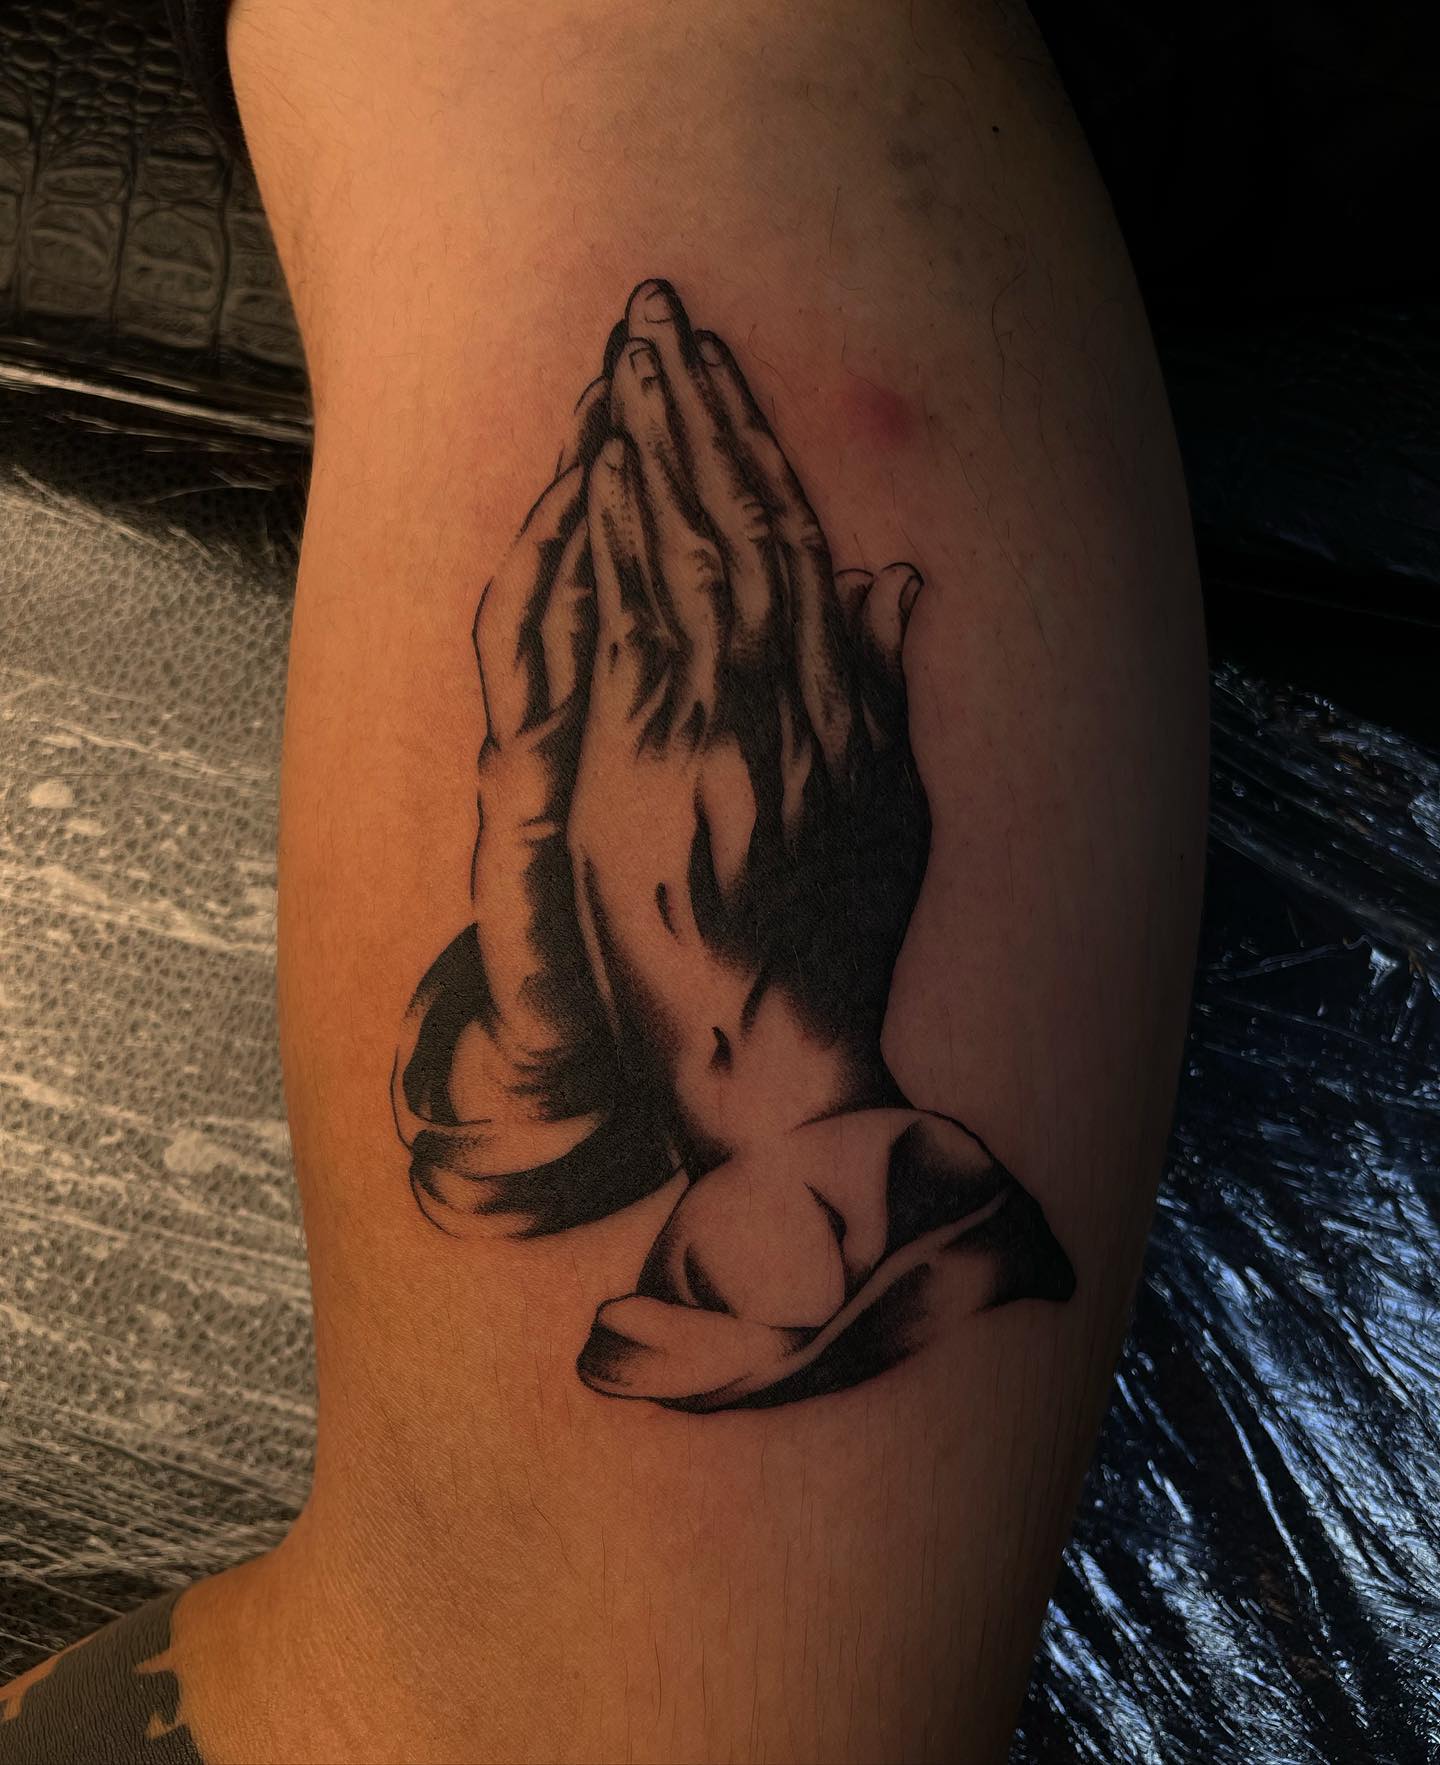 Tatuaje realista de manos rezando